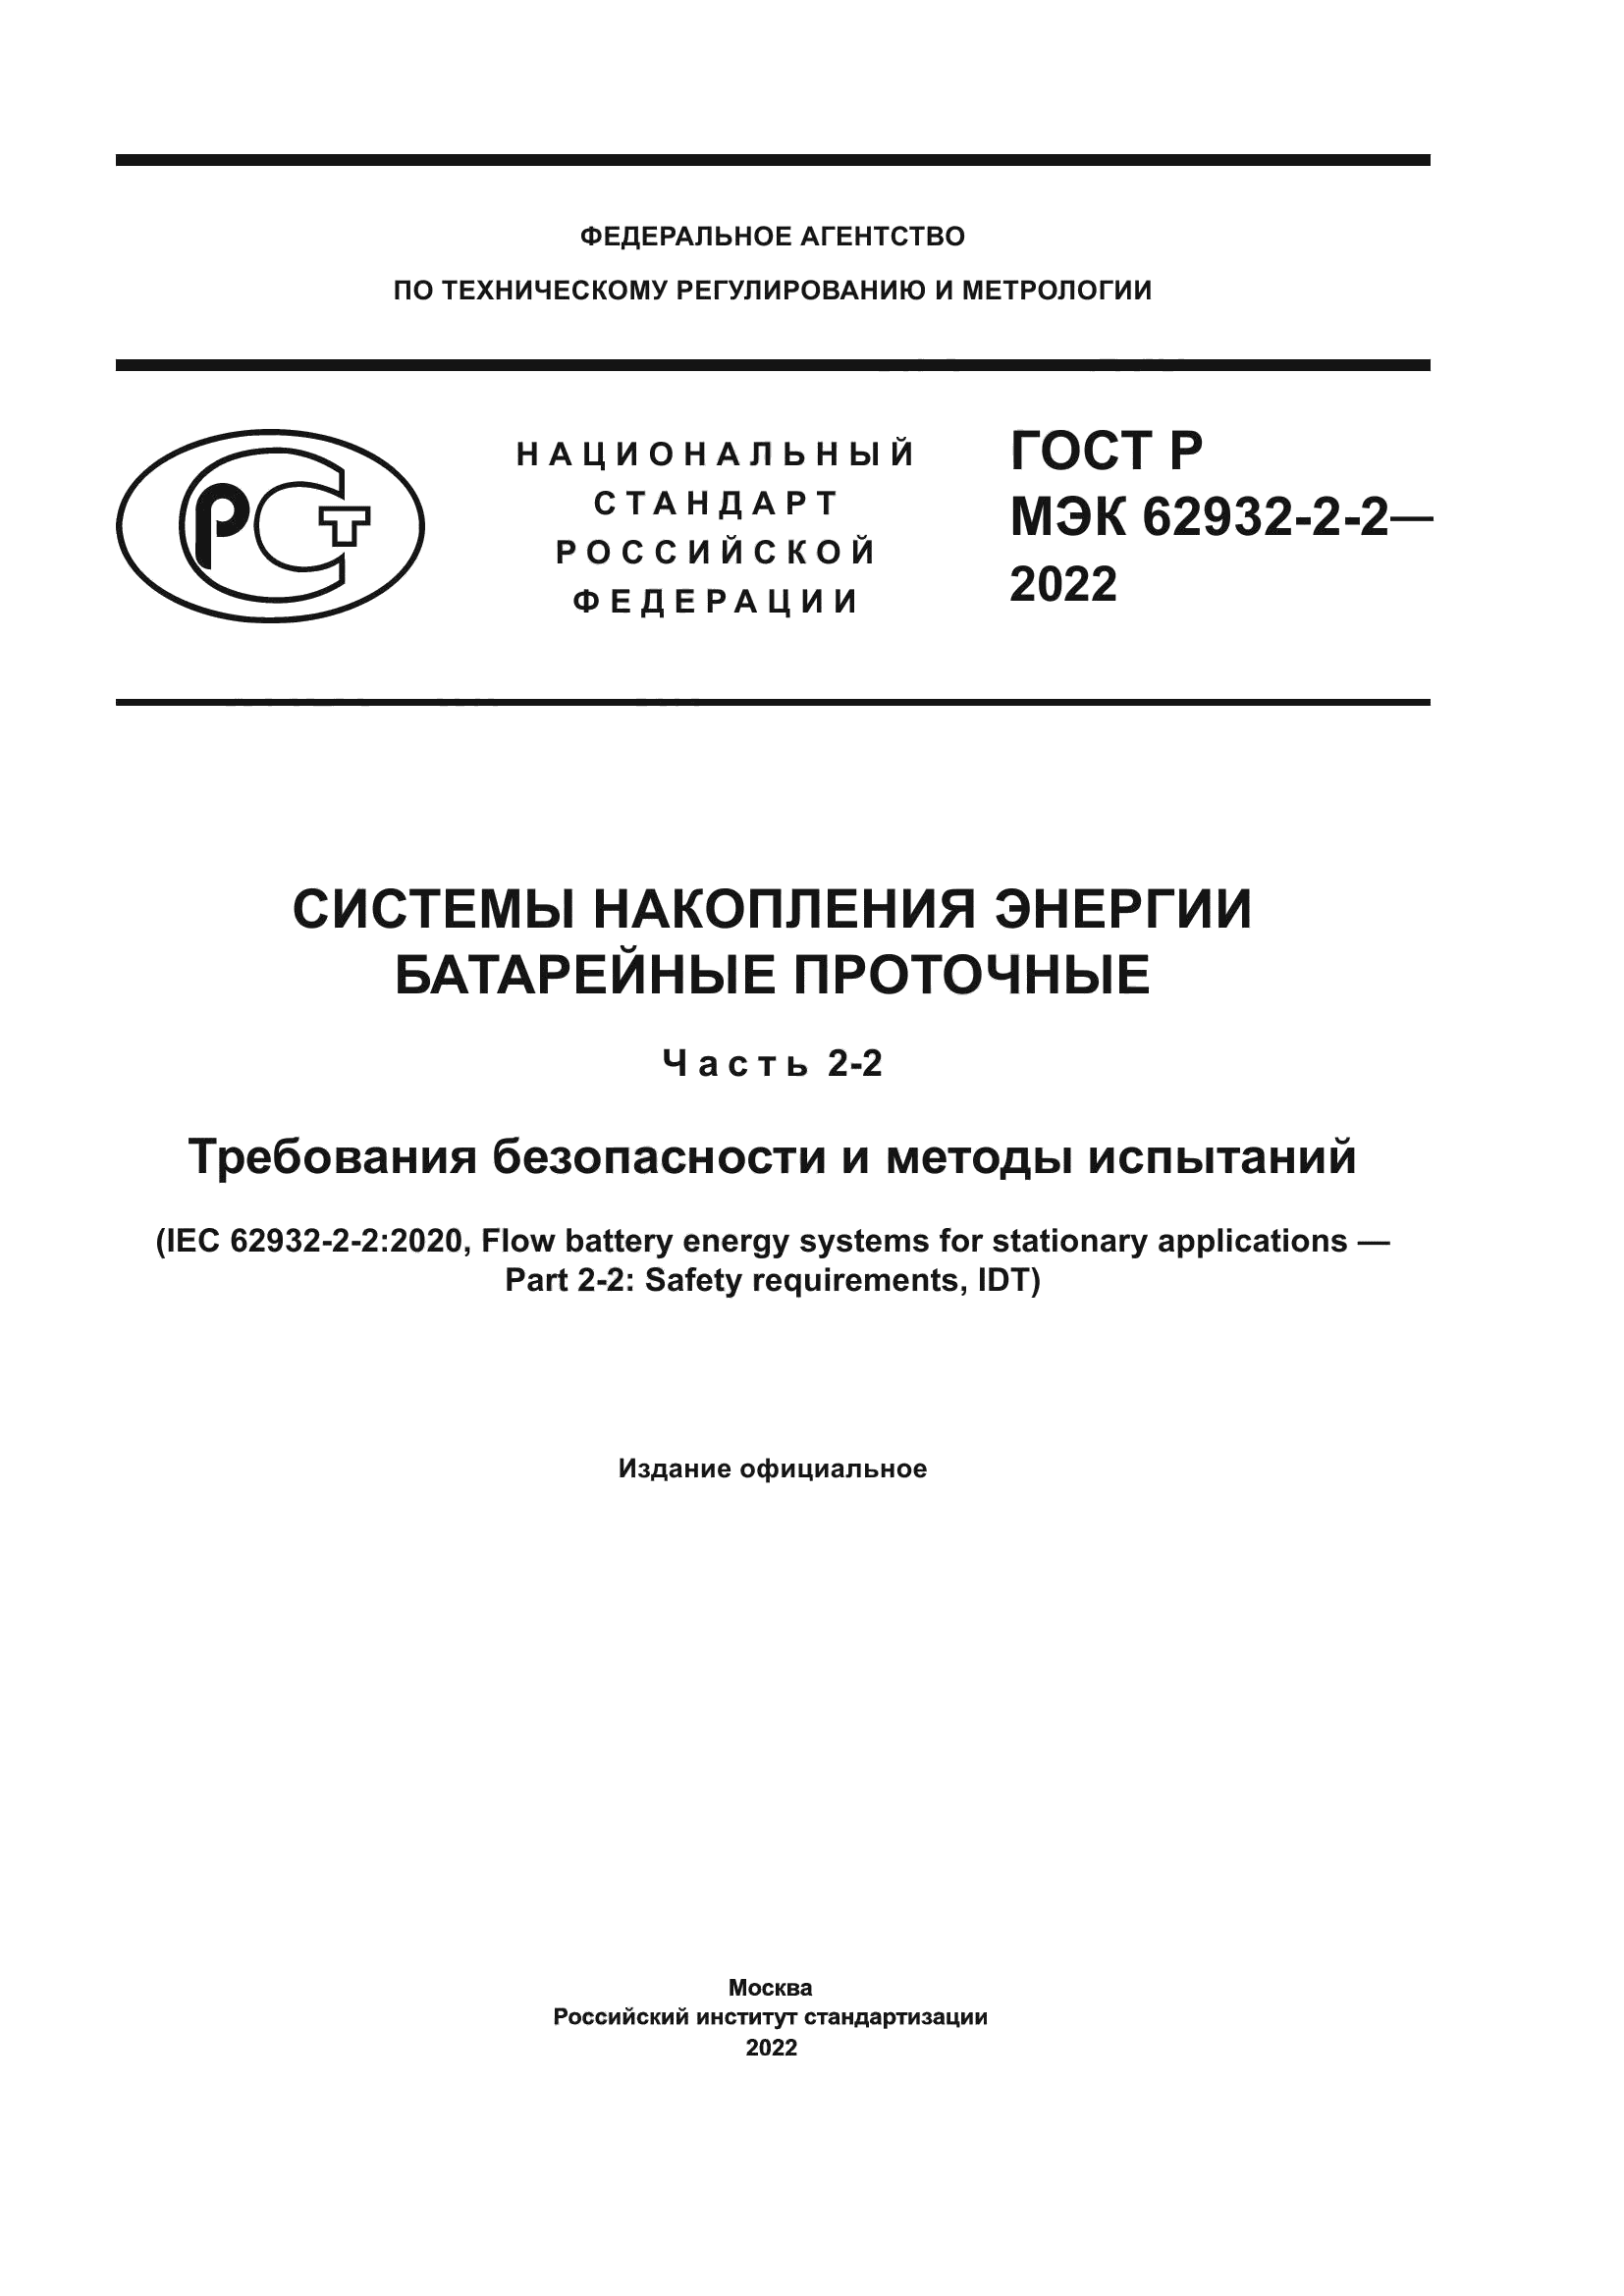 ГОСТ Р МЭК 62932-2-2-2022